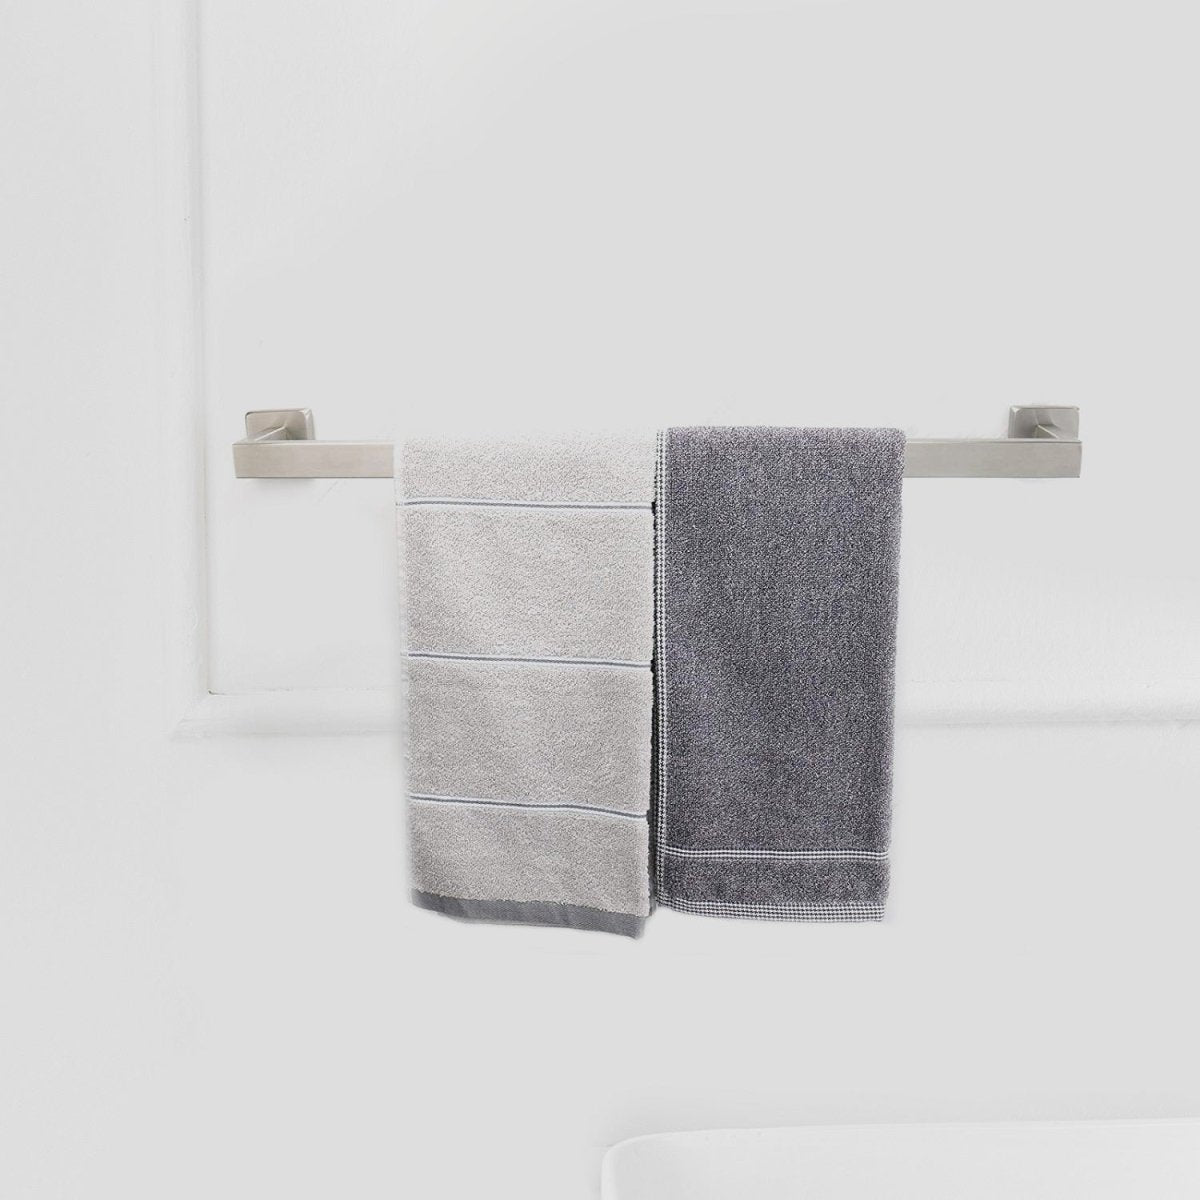 5 PCS Towel Bar Towel Hook Toilet Paper Holder Set Nickel - buyfaucet.com